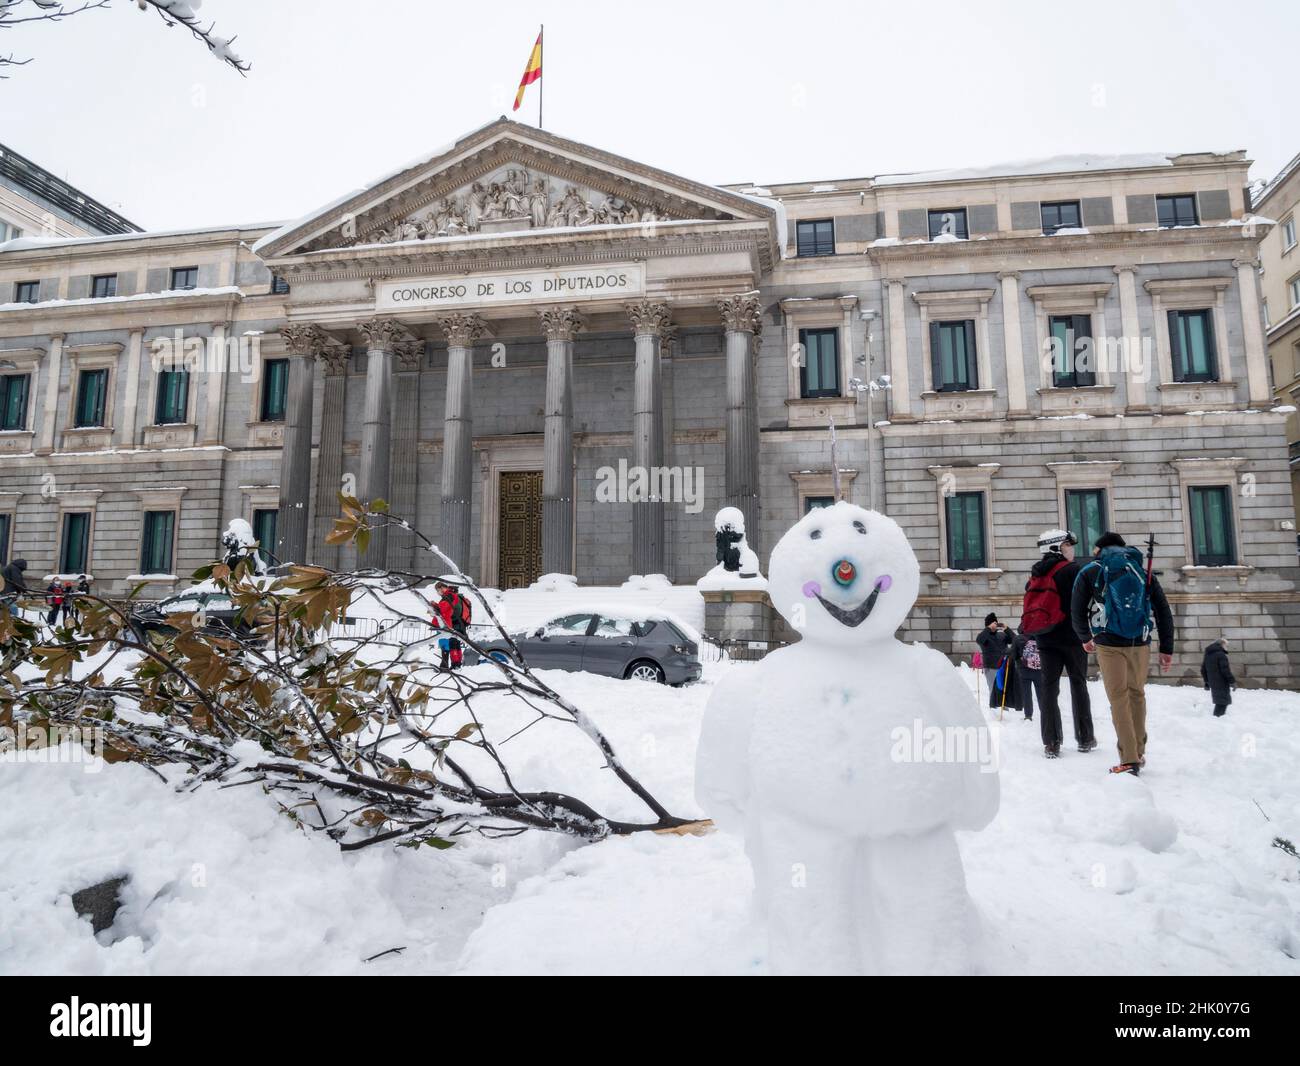 Congreso de los Diputados nevado con muñeco de nieve. Madrid. España. Stock Photo